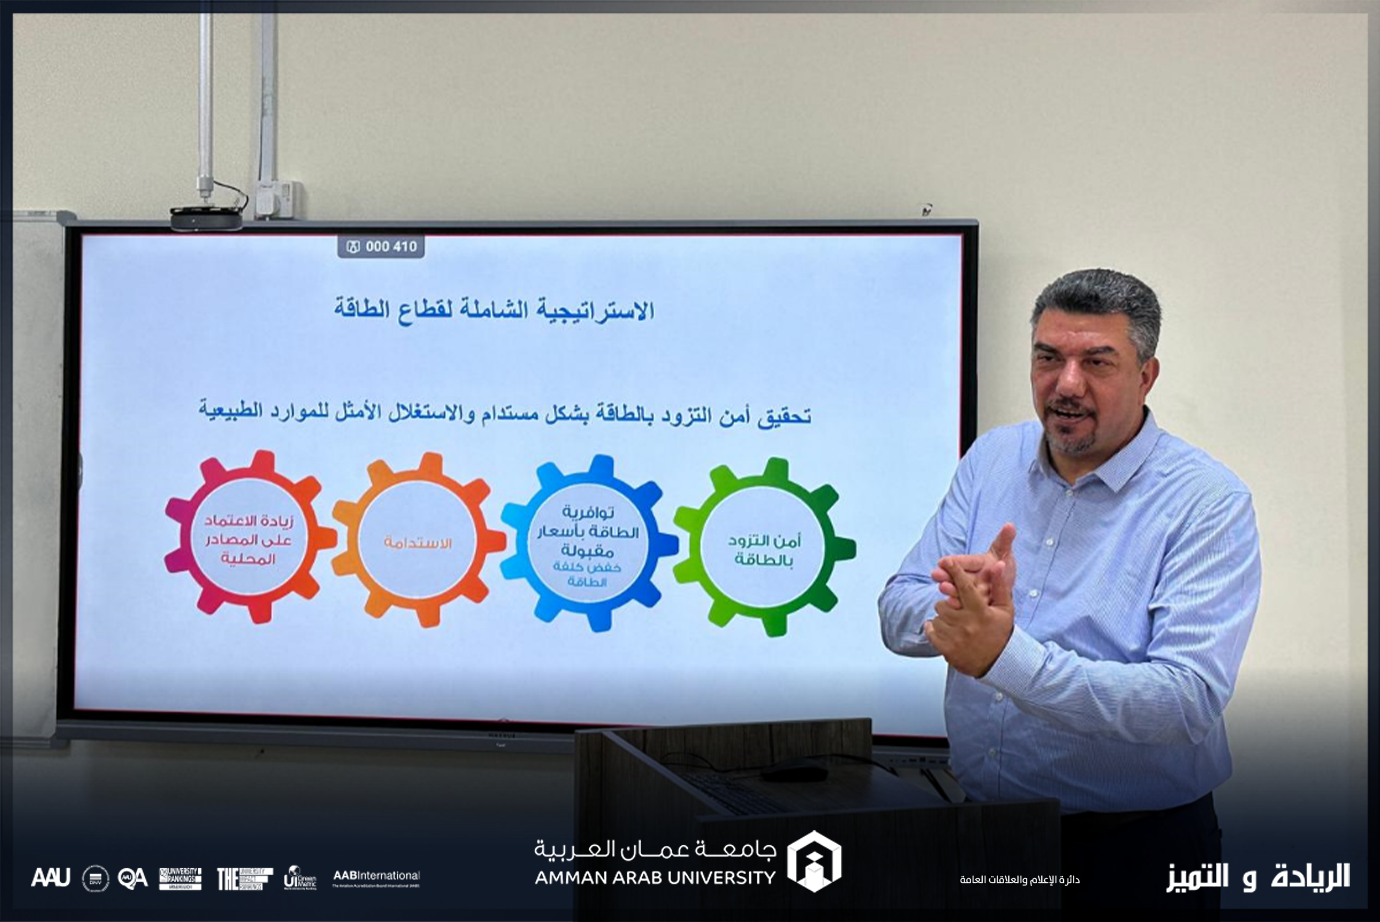 هندسة الطاقة المتجددة في عمان العربية يستضيف مستشار الطاقة الدكتور إياد السرطاوي